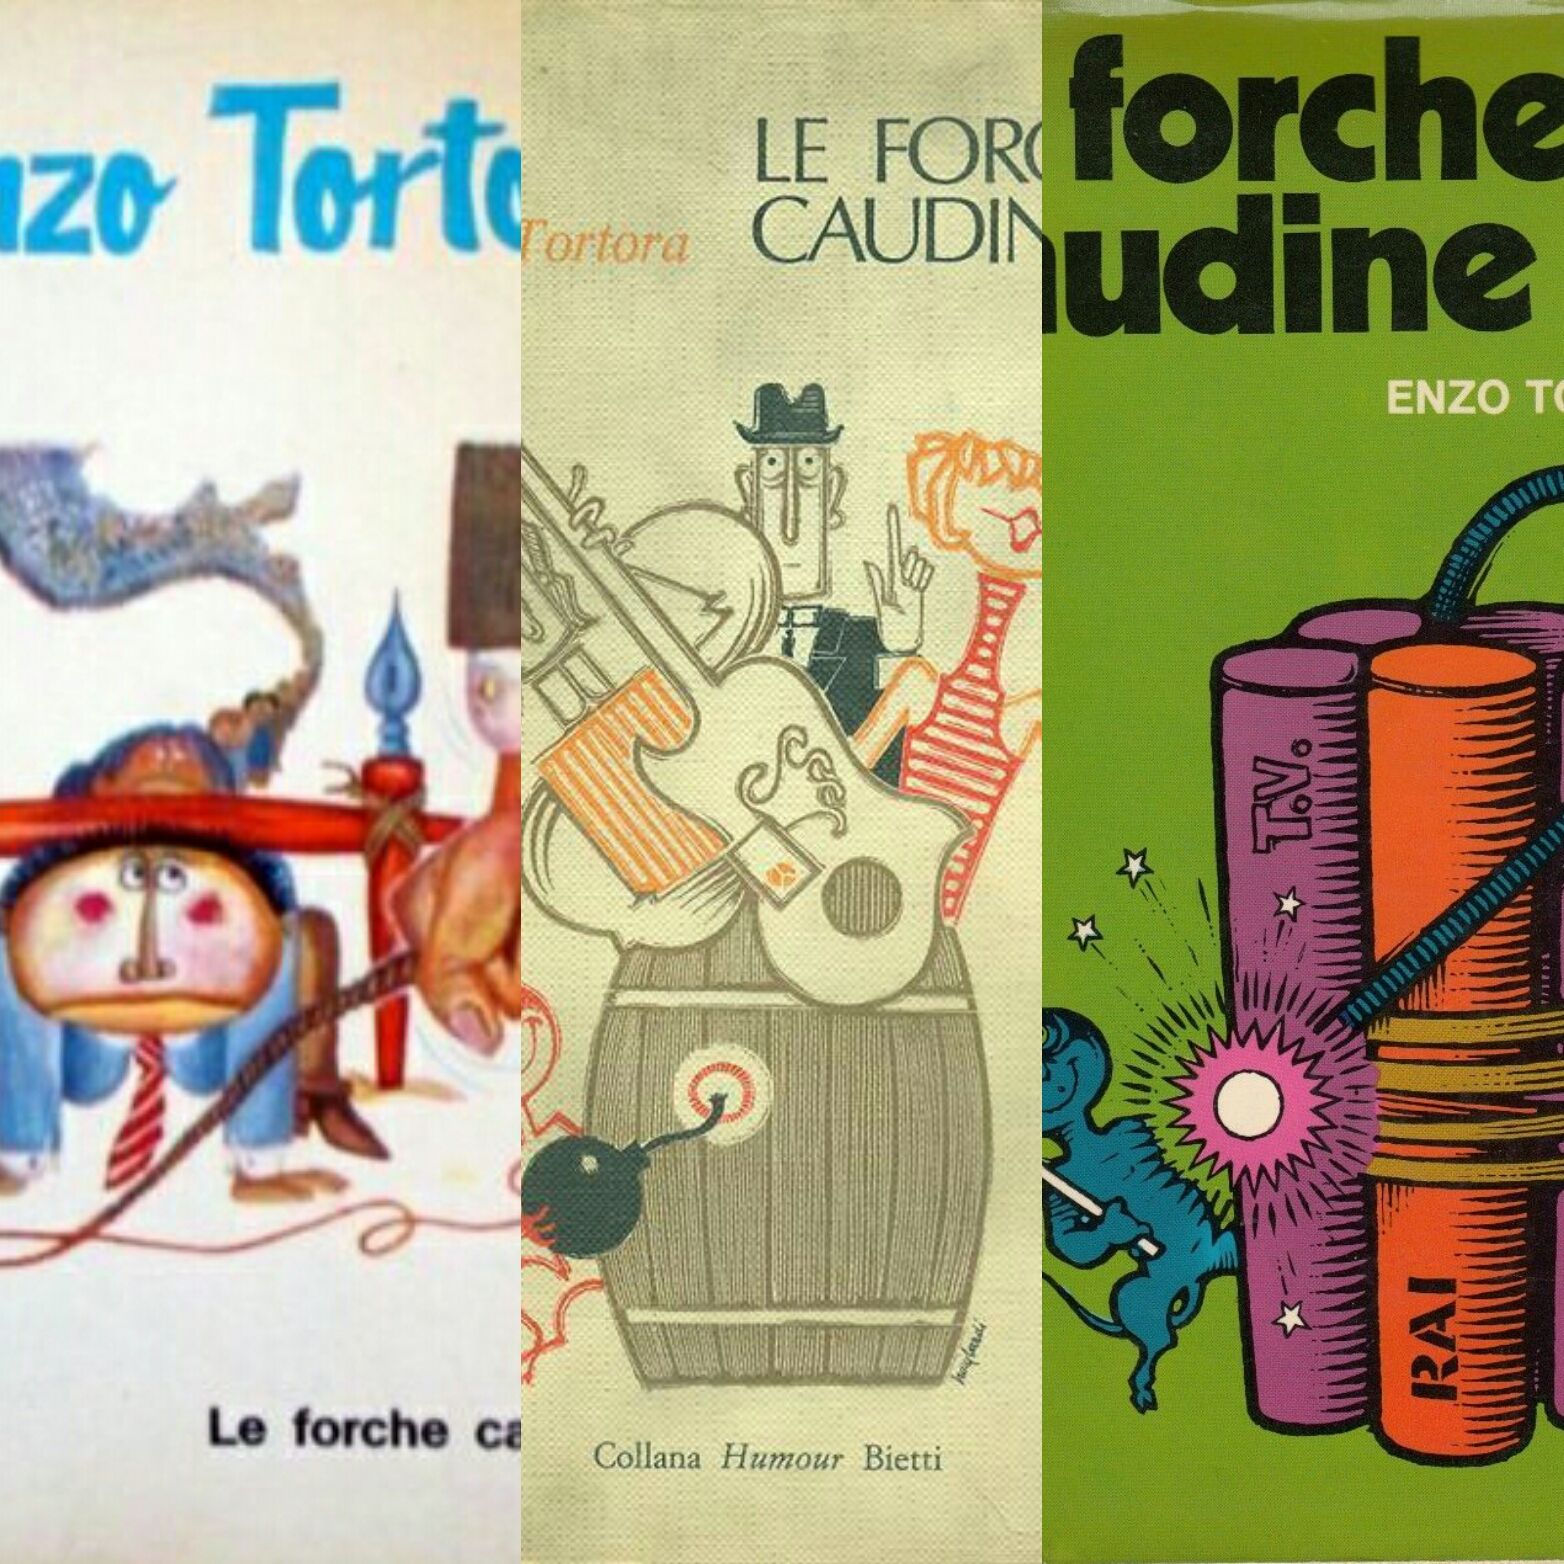 “Le forche caudine” di Enzo Tortora (1967). Ci sono 3 prime edizioni?